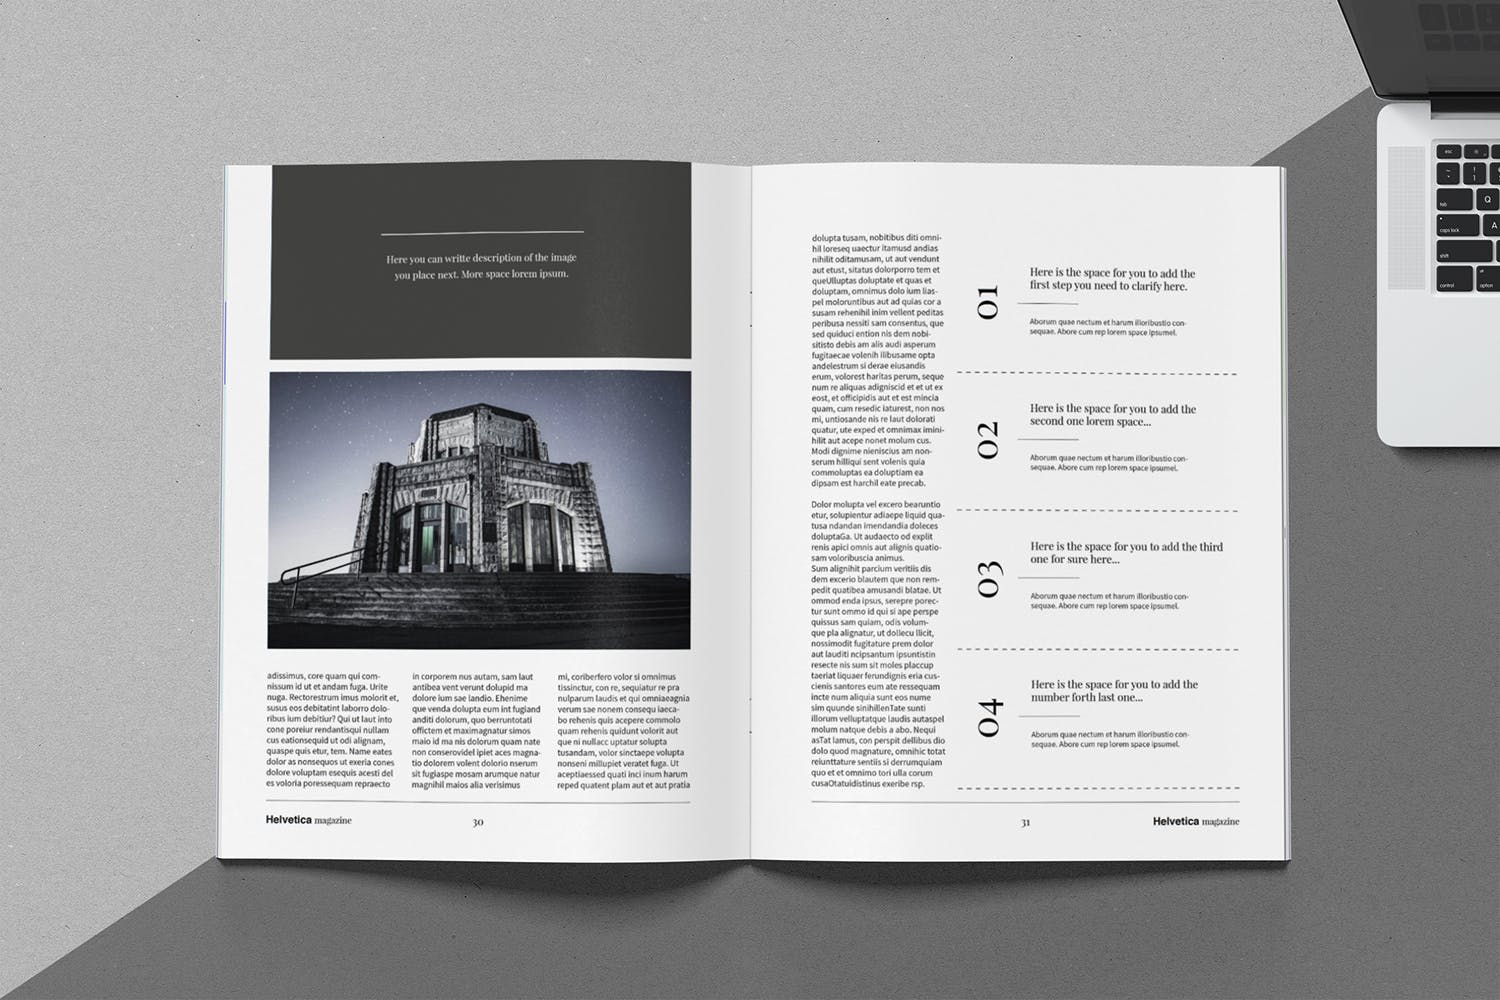 时尚行业产品评测杂志Indesign模板下载 Helvetica Magazine Indesign Template插图(12)